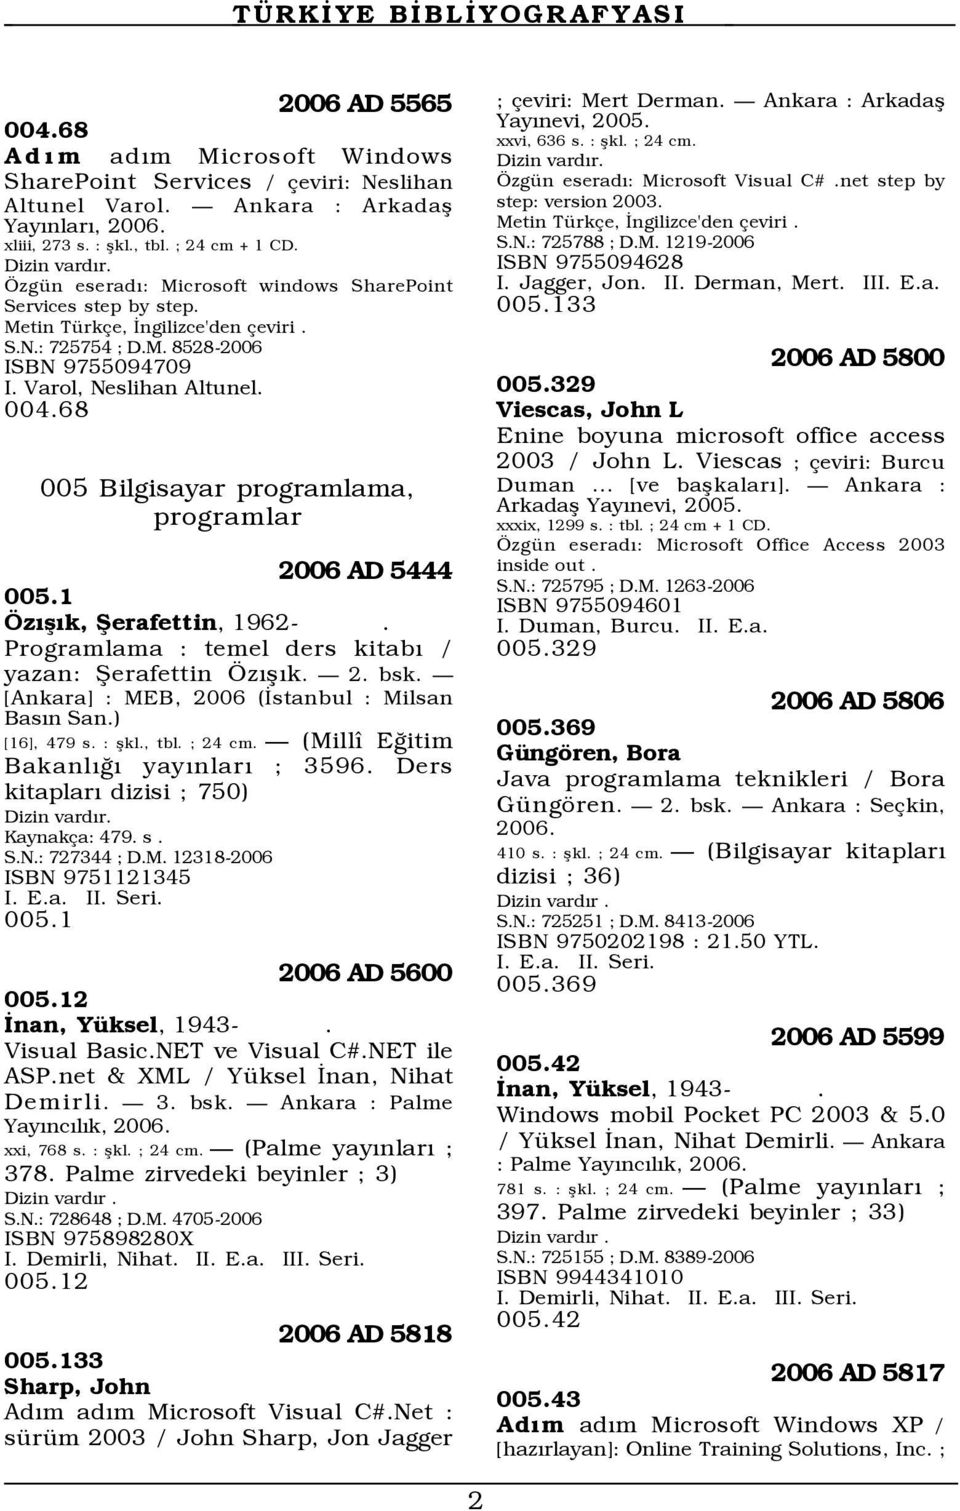 68 005 Bilgisayar programlama, programlar 2006 AD 5444 005.1 zýßýk, Þerafettin, 1962-. Programlama : temel ders kitabý / yazan: Þerafettin zýßýk. Ñ 2. bsk.